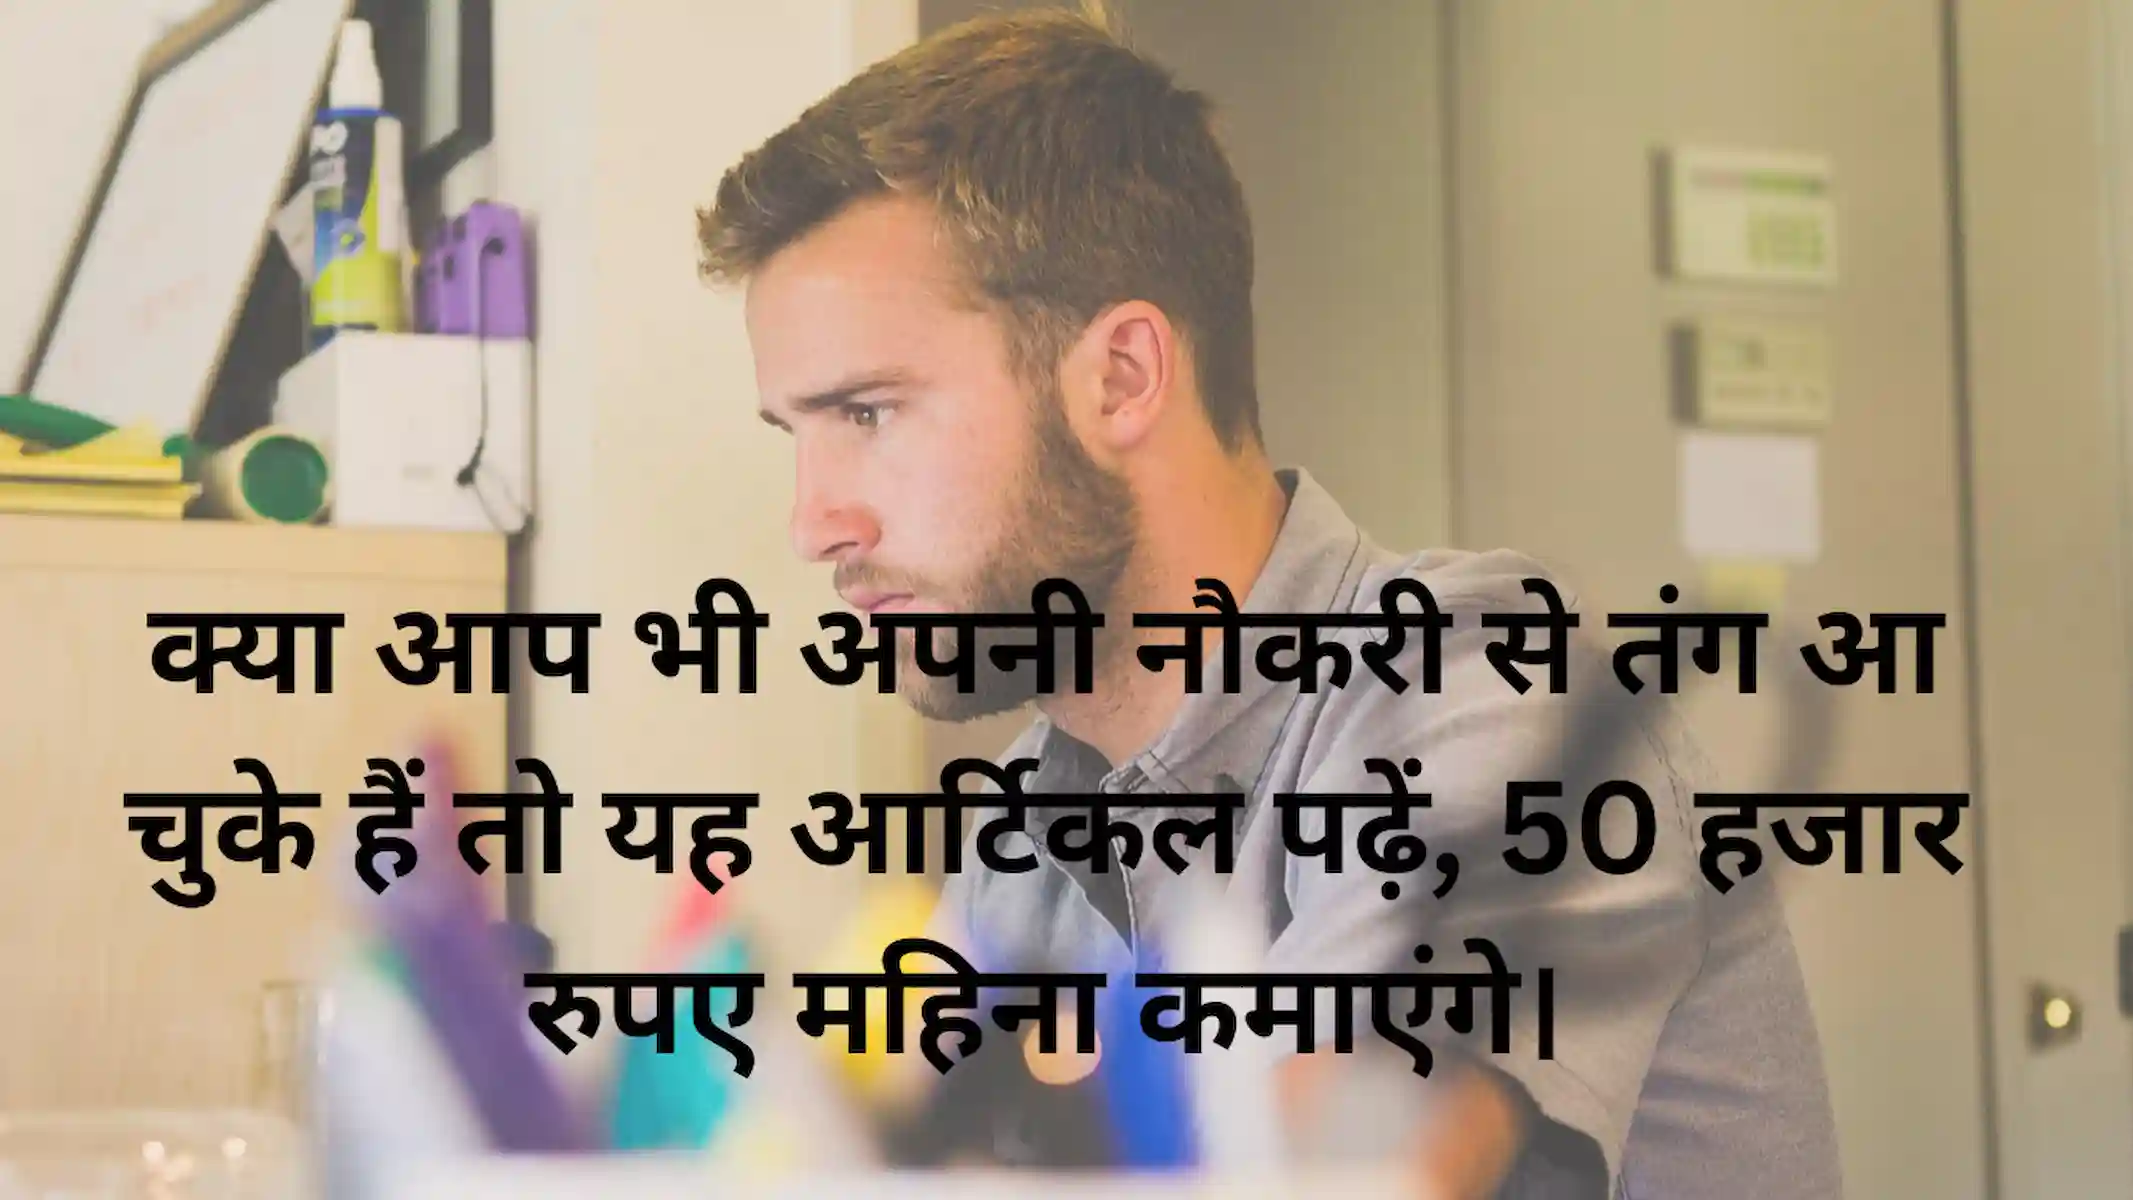 क्या आप भी अपनी नौकरी से तंग आ चुके हैं तो यह आर्टिकल पढ़ें, 50 हजार रुपए महिना कमाएंगे।